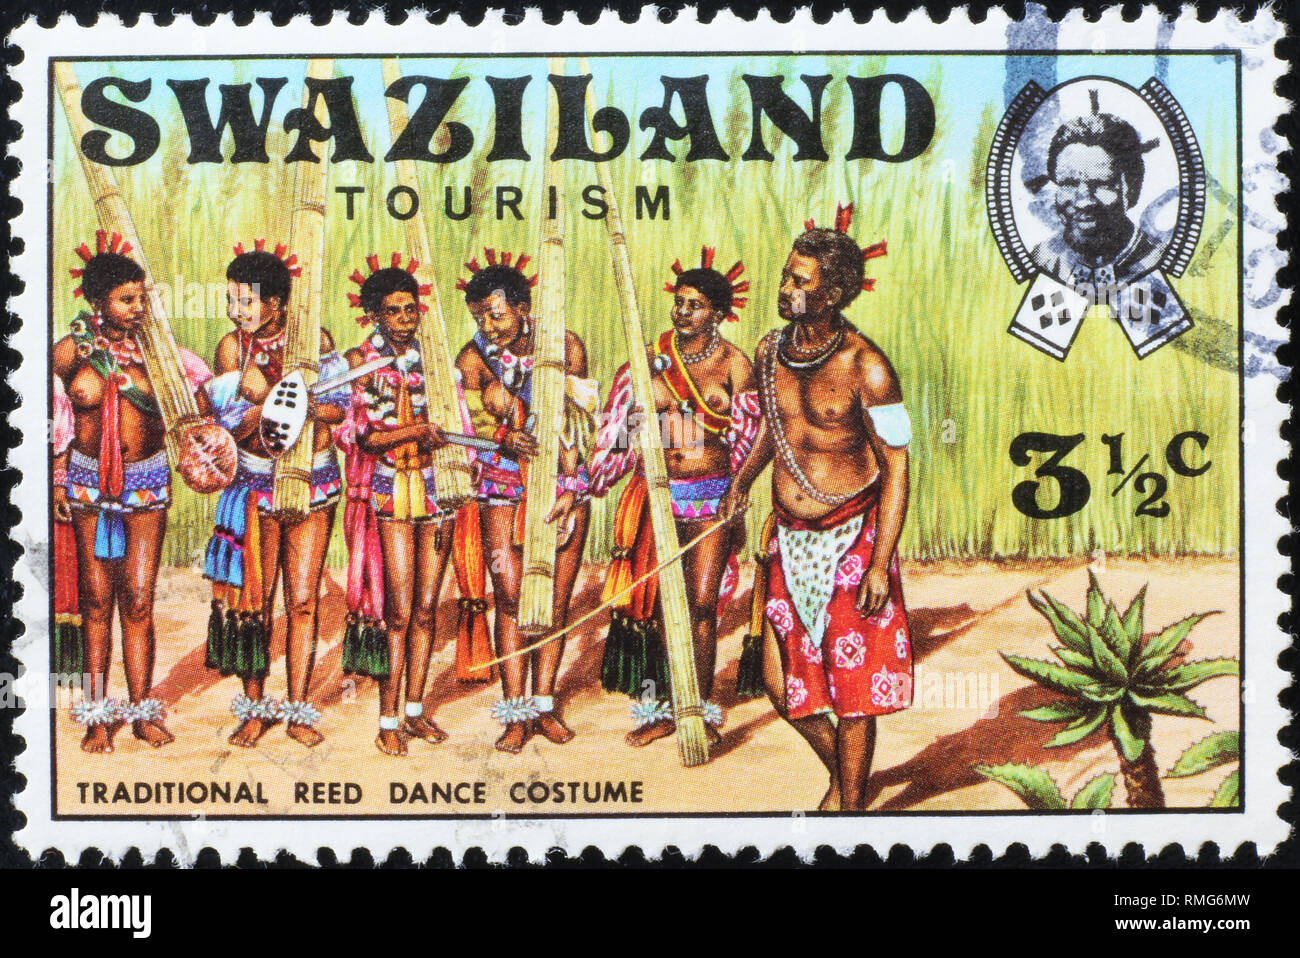 Kostüme für traditionellen Tanz in Swasiland auf Briefmarke Stockfoto